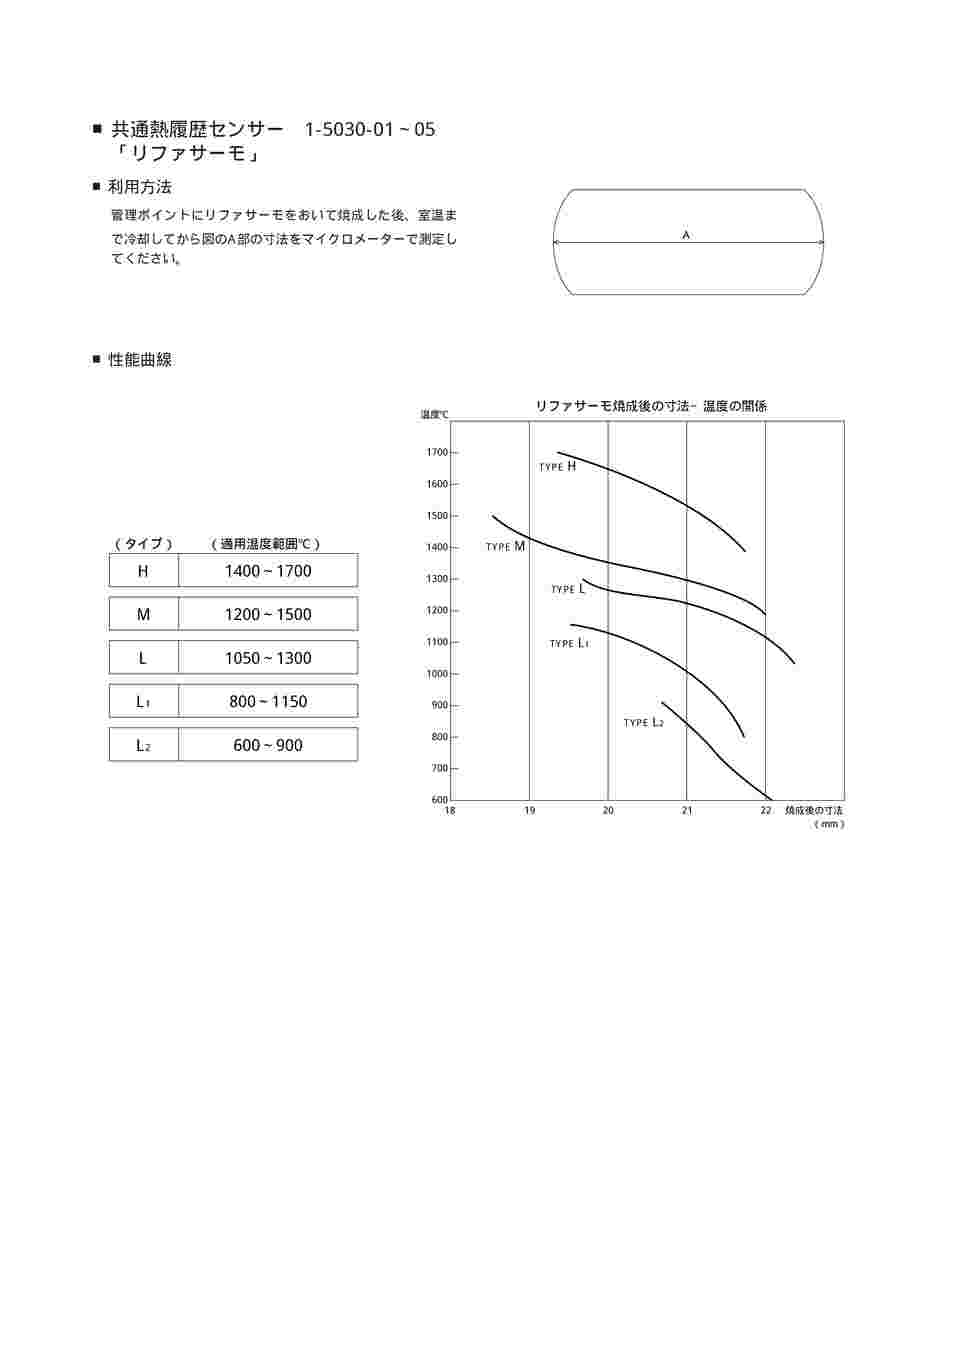 1-5030-03 共通熱履歴センサー リファサーモ 200入 1050～1300℃ L 